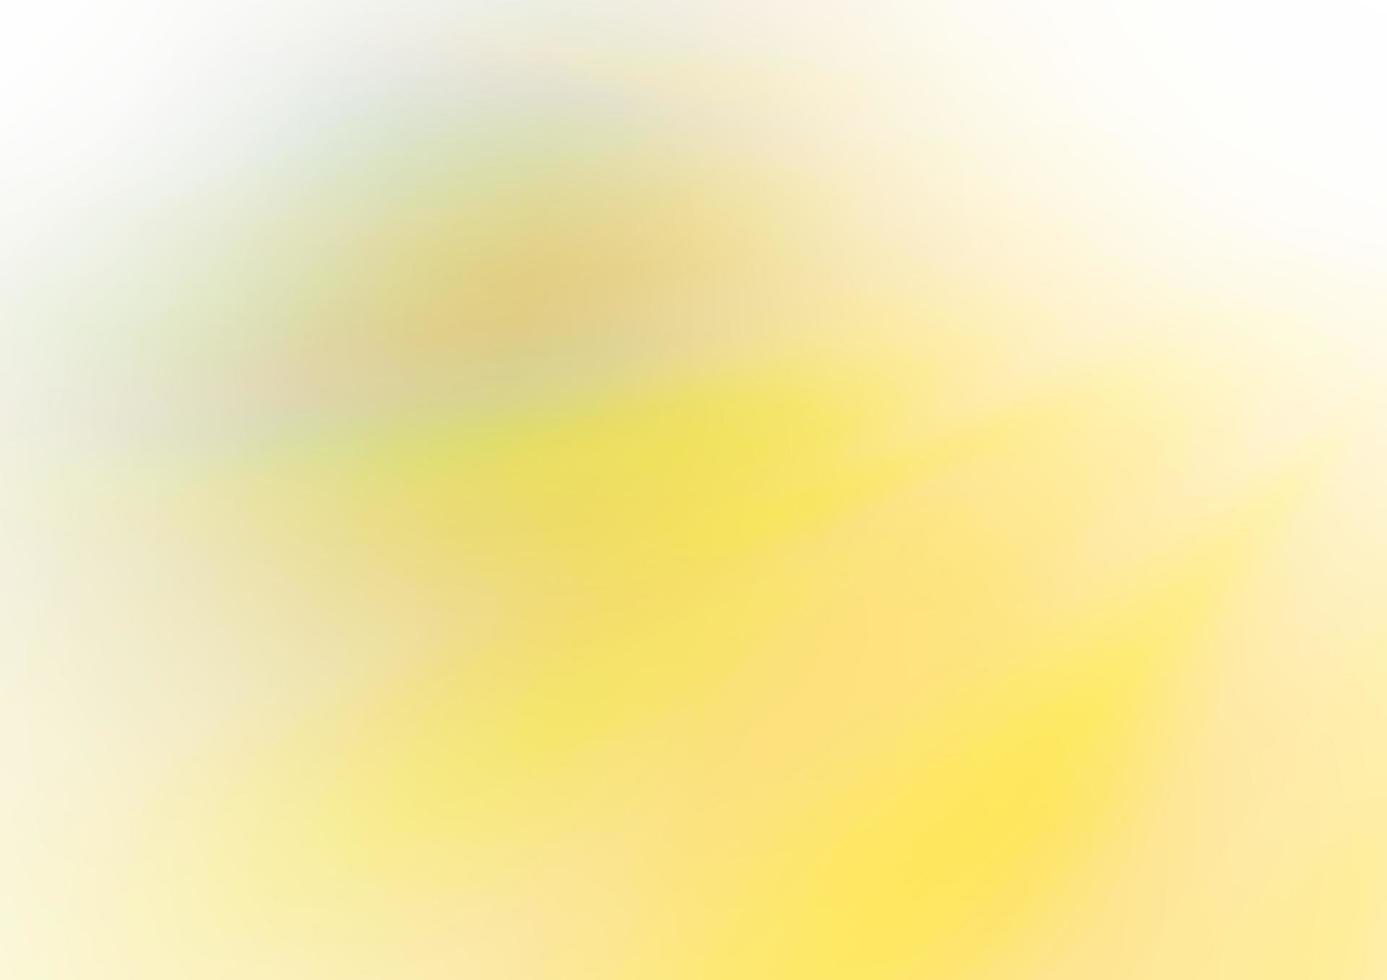 sfondo astratto vettoriale verde chiaro, giallo.